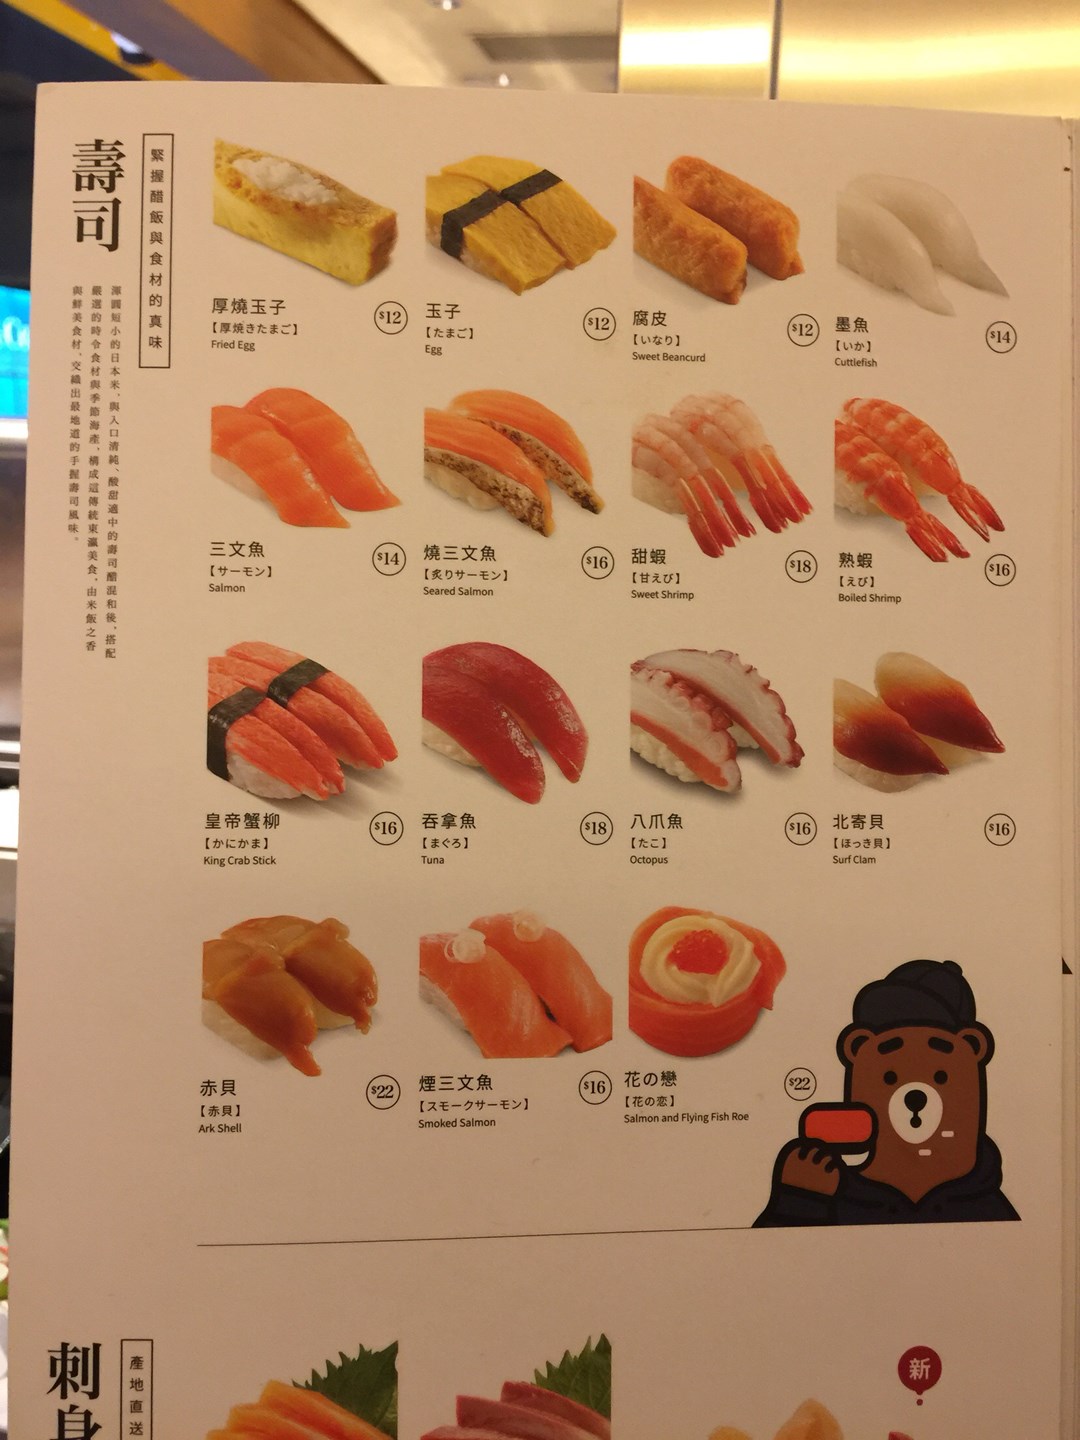 寿司名称对应图片图片